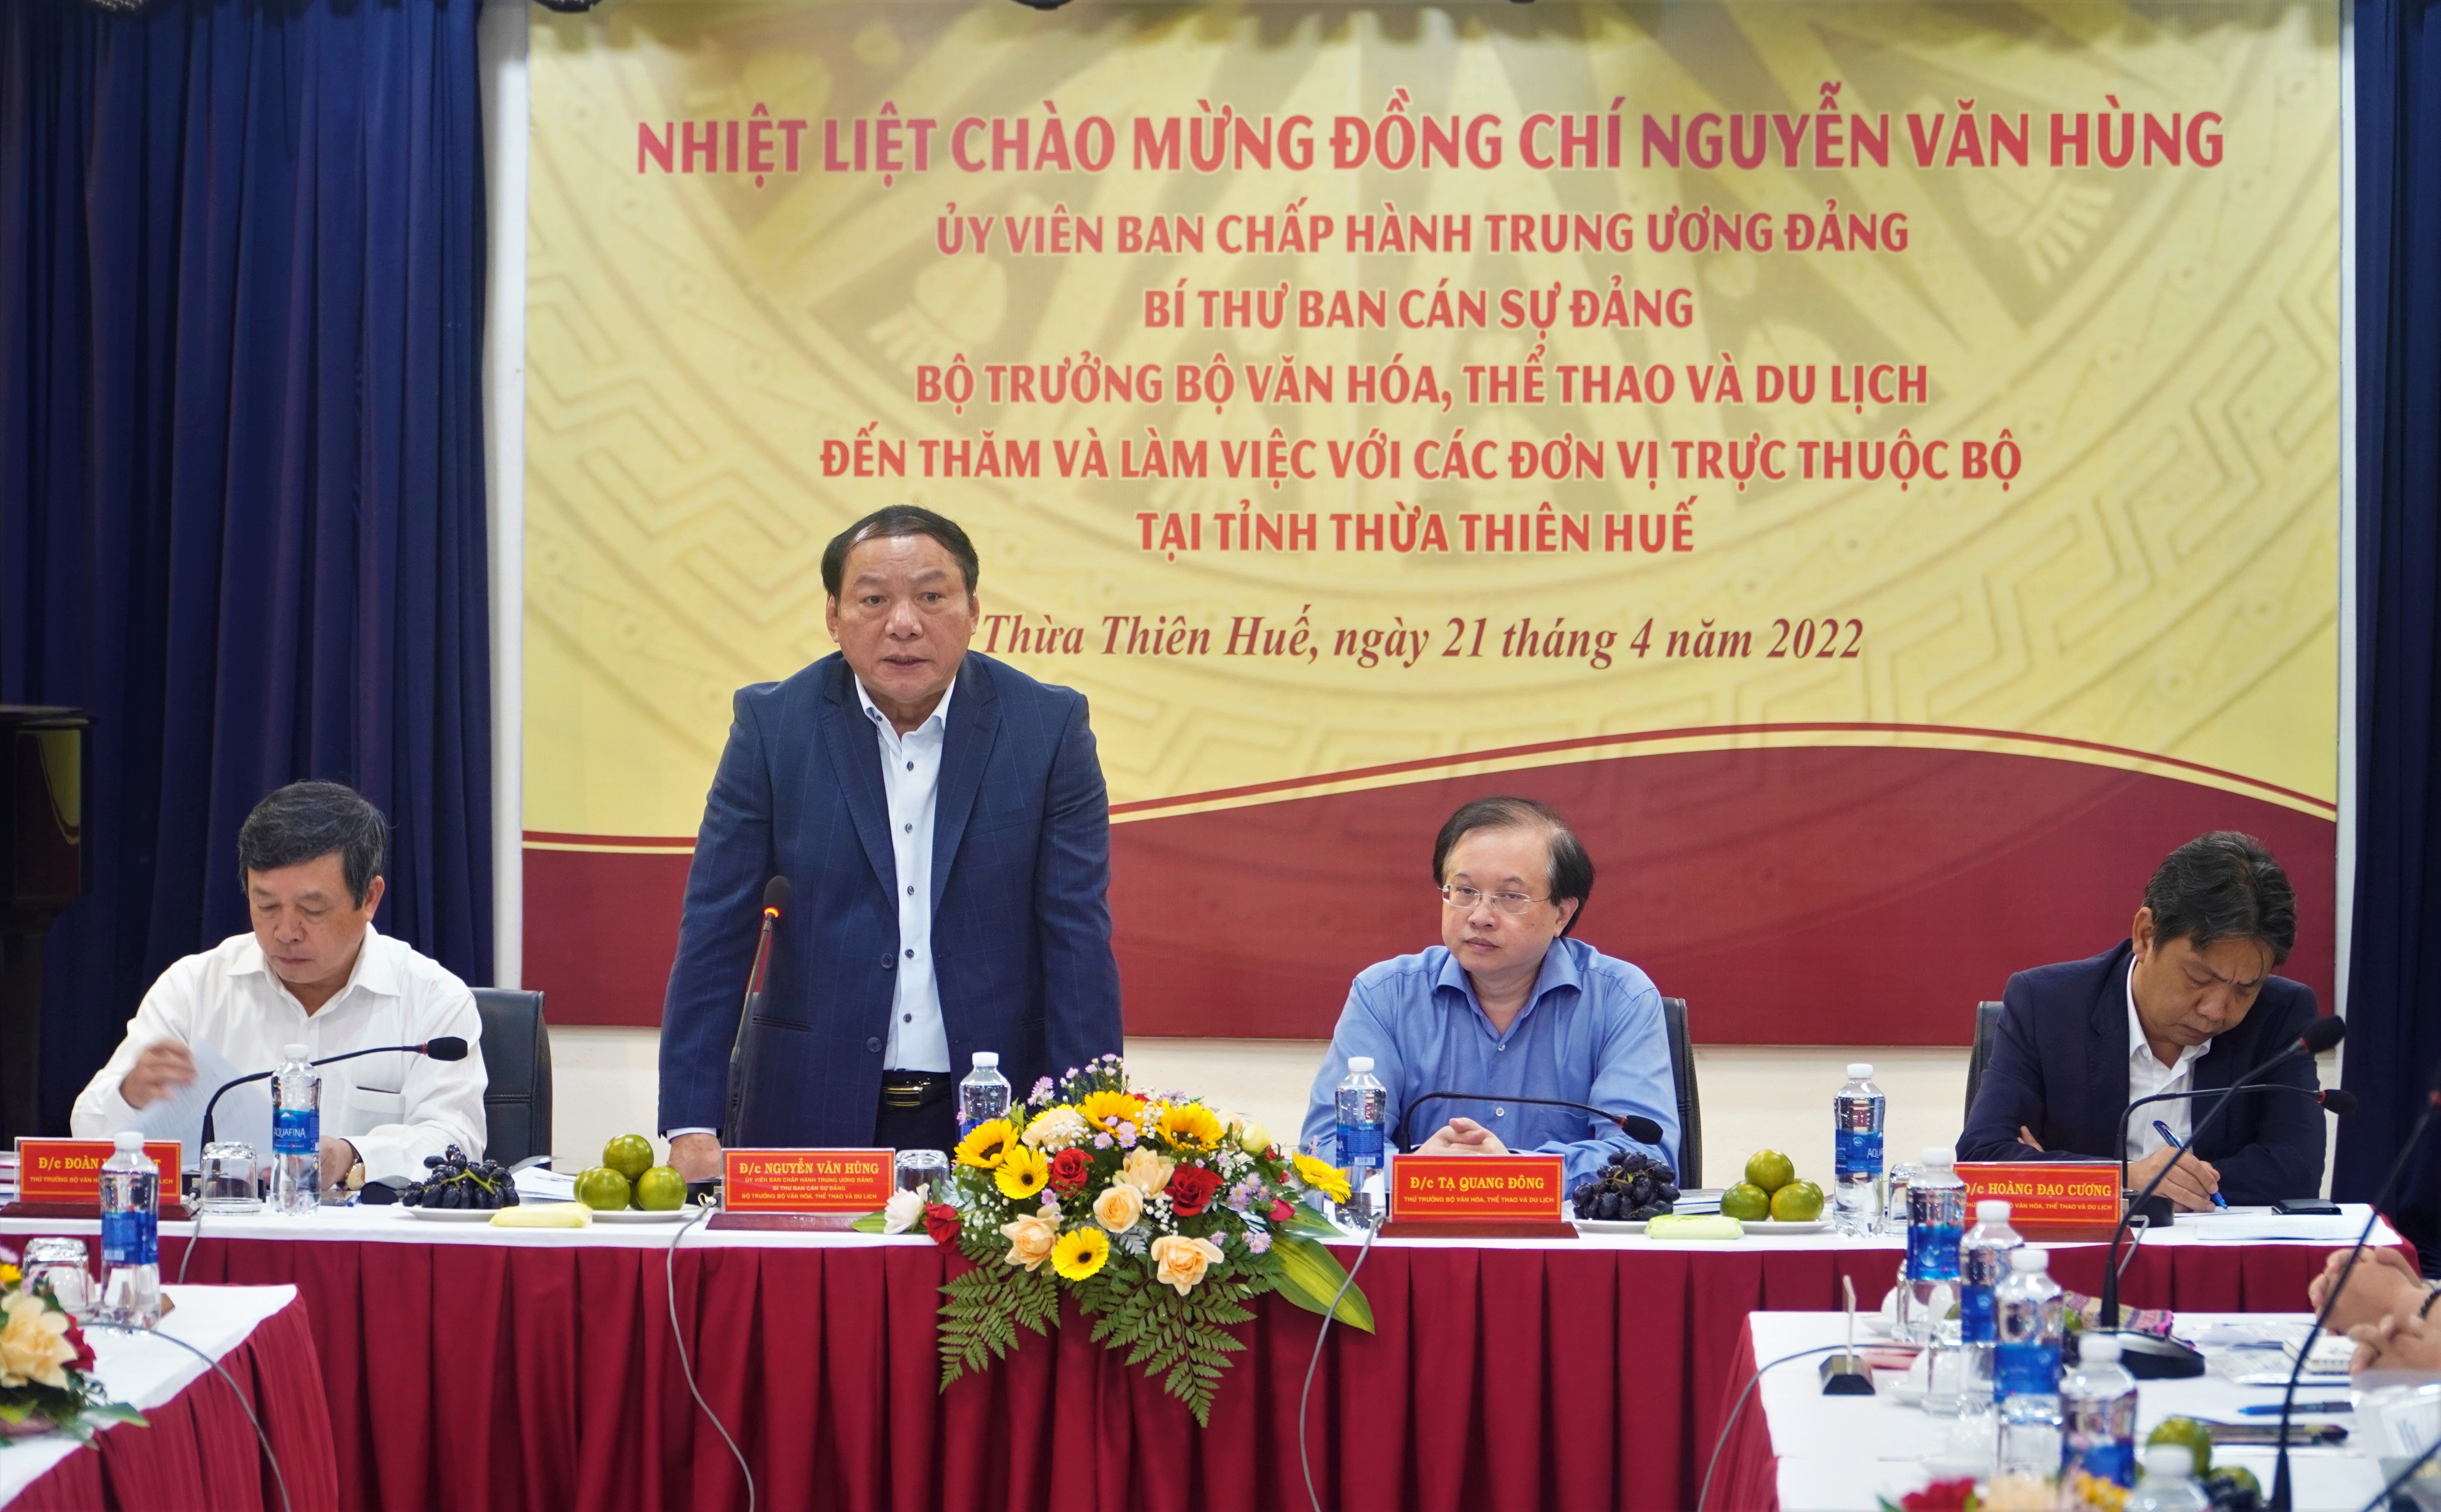 Đồng chí Nguyễn Văn Hùng, Ủy viên BCH Trung ương Đảng, Bí thư Ban cán sự đảng, Bộ trưởng Bộ VHTTDL làm việc với các đơn vị trực thuộc Bộ tại Huế